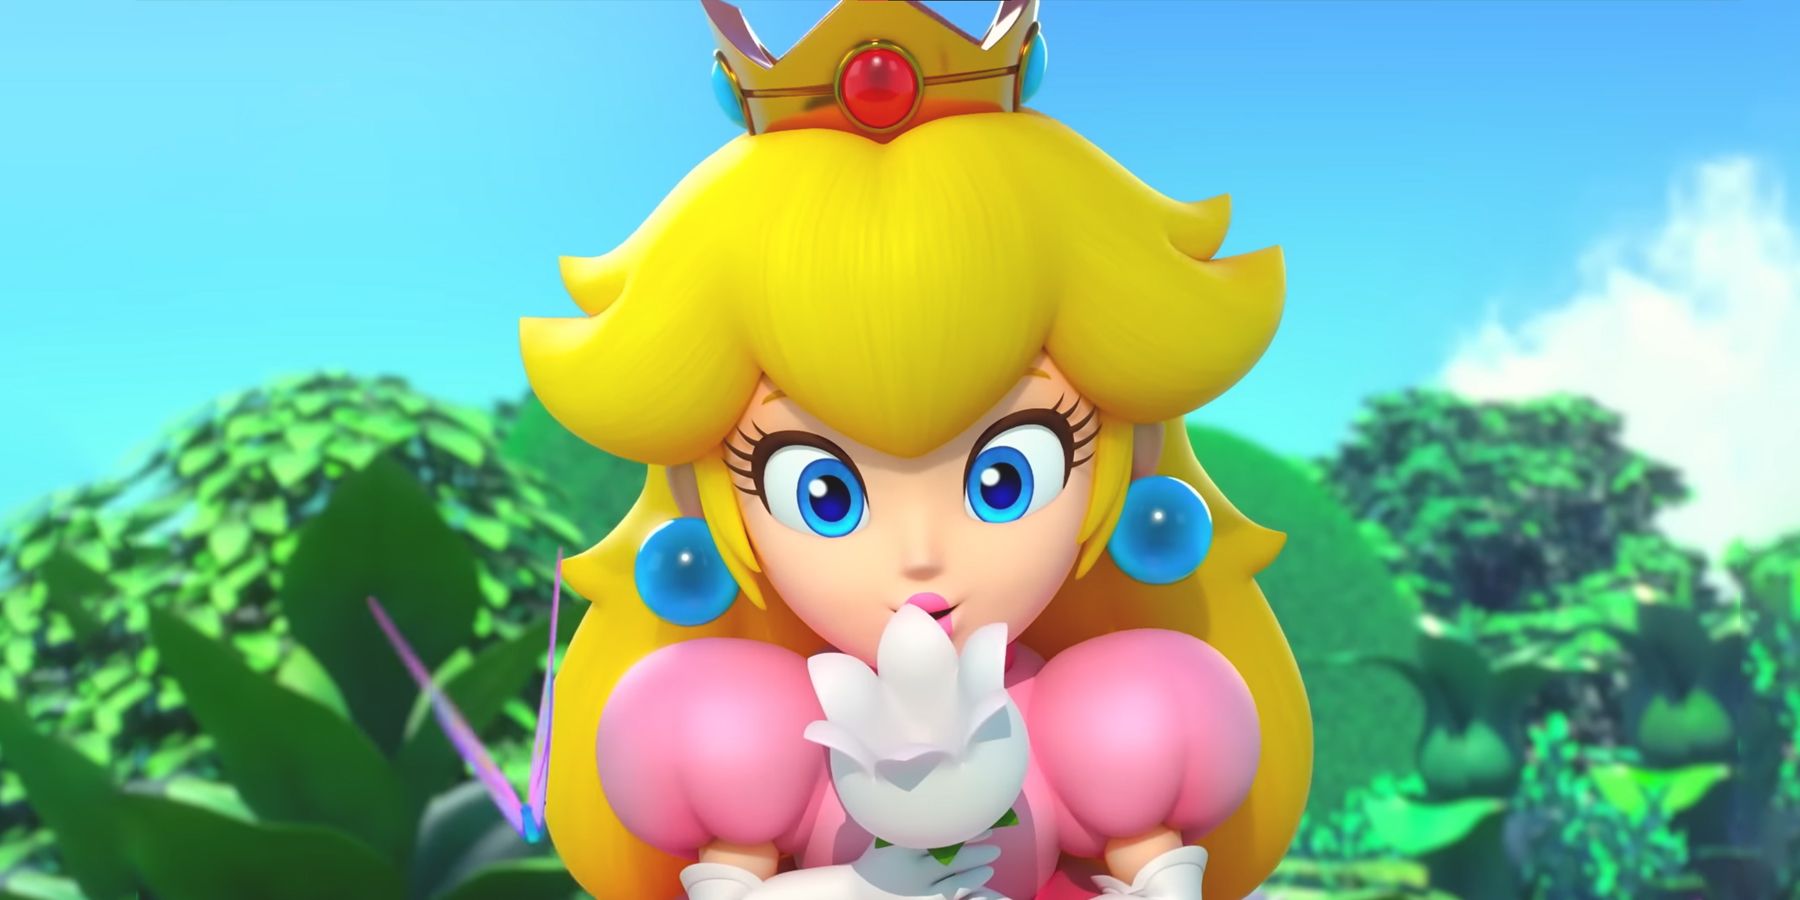 Captura de pantalla del tráiler revelador del remake de Super Mario RPG Princesa Peach sosteniendo una flor